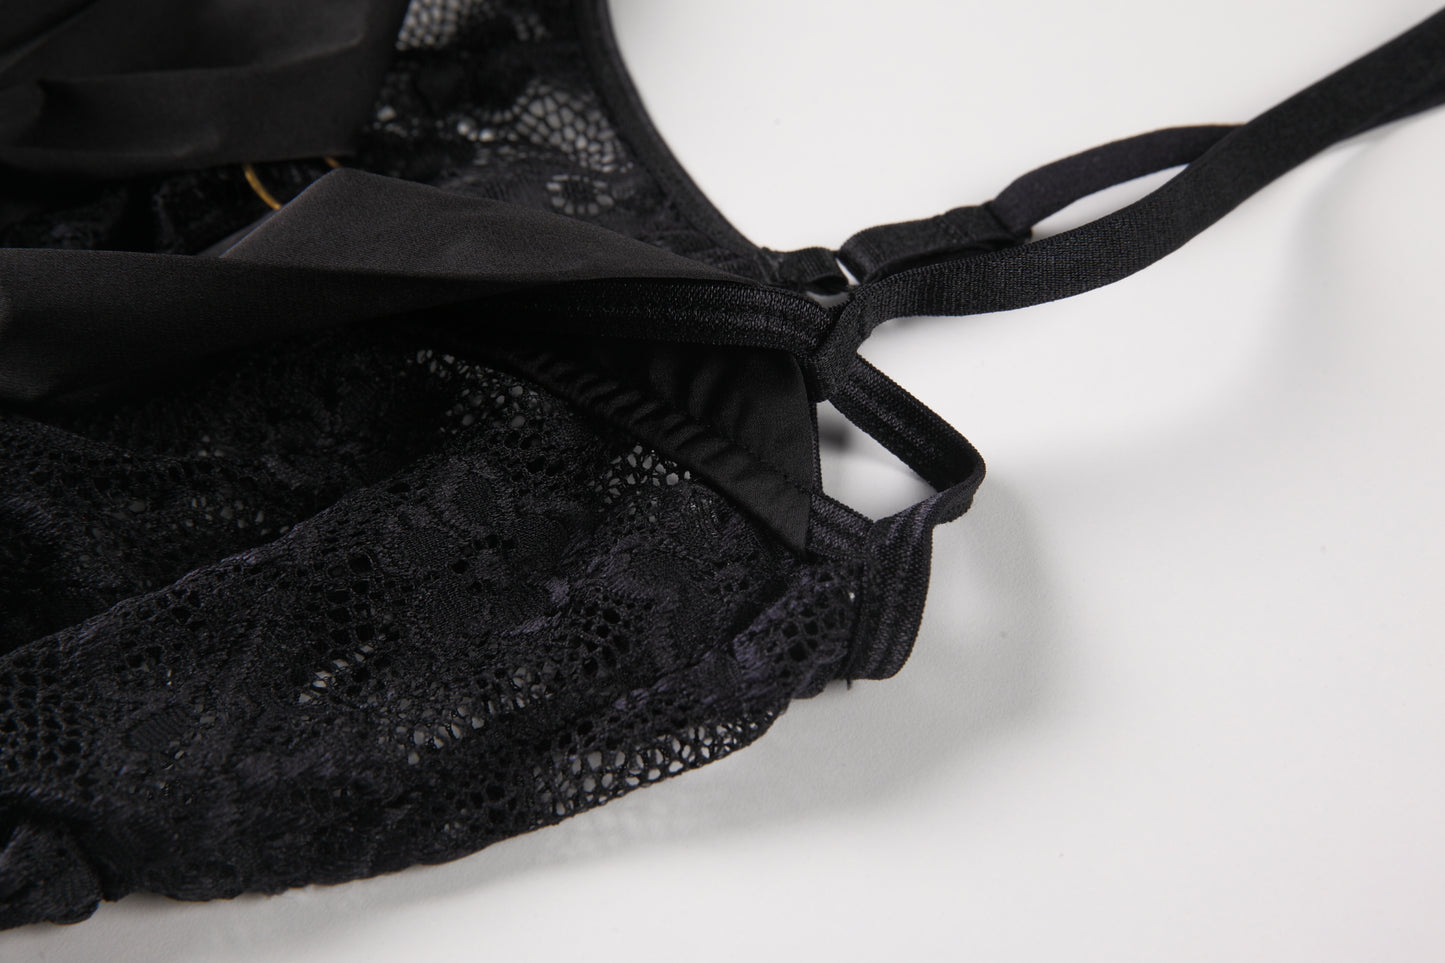 Seductive Lace Open-Crotch Bodysuit for Women – Sexy Transparent One-Piece Lingerie